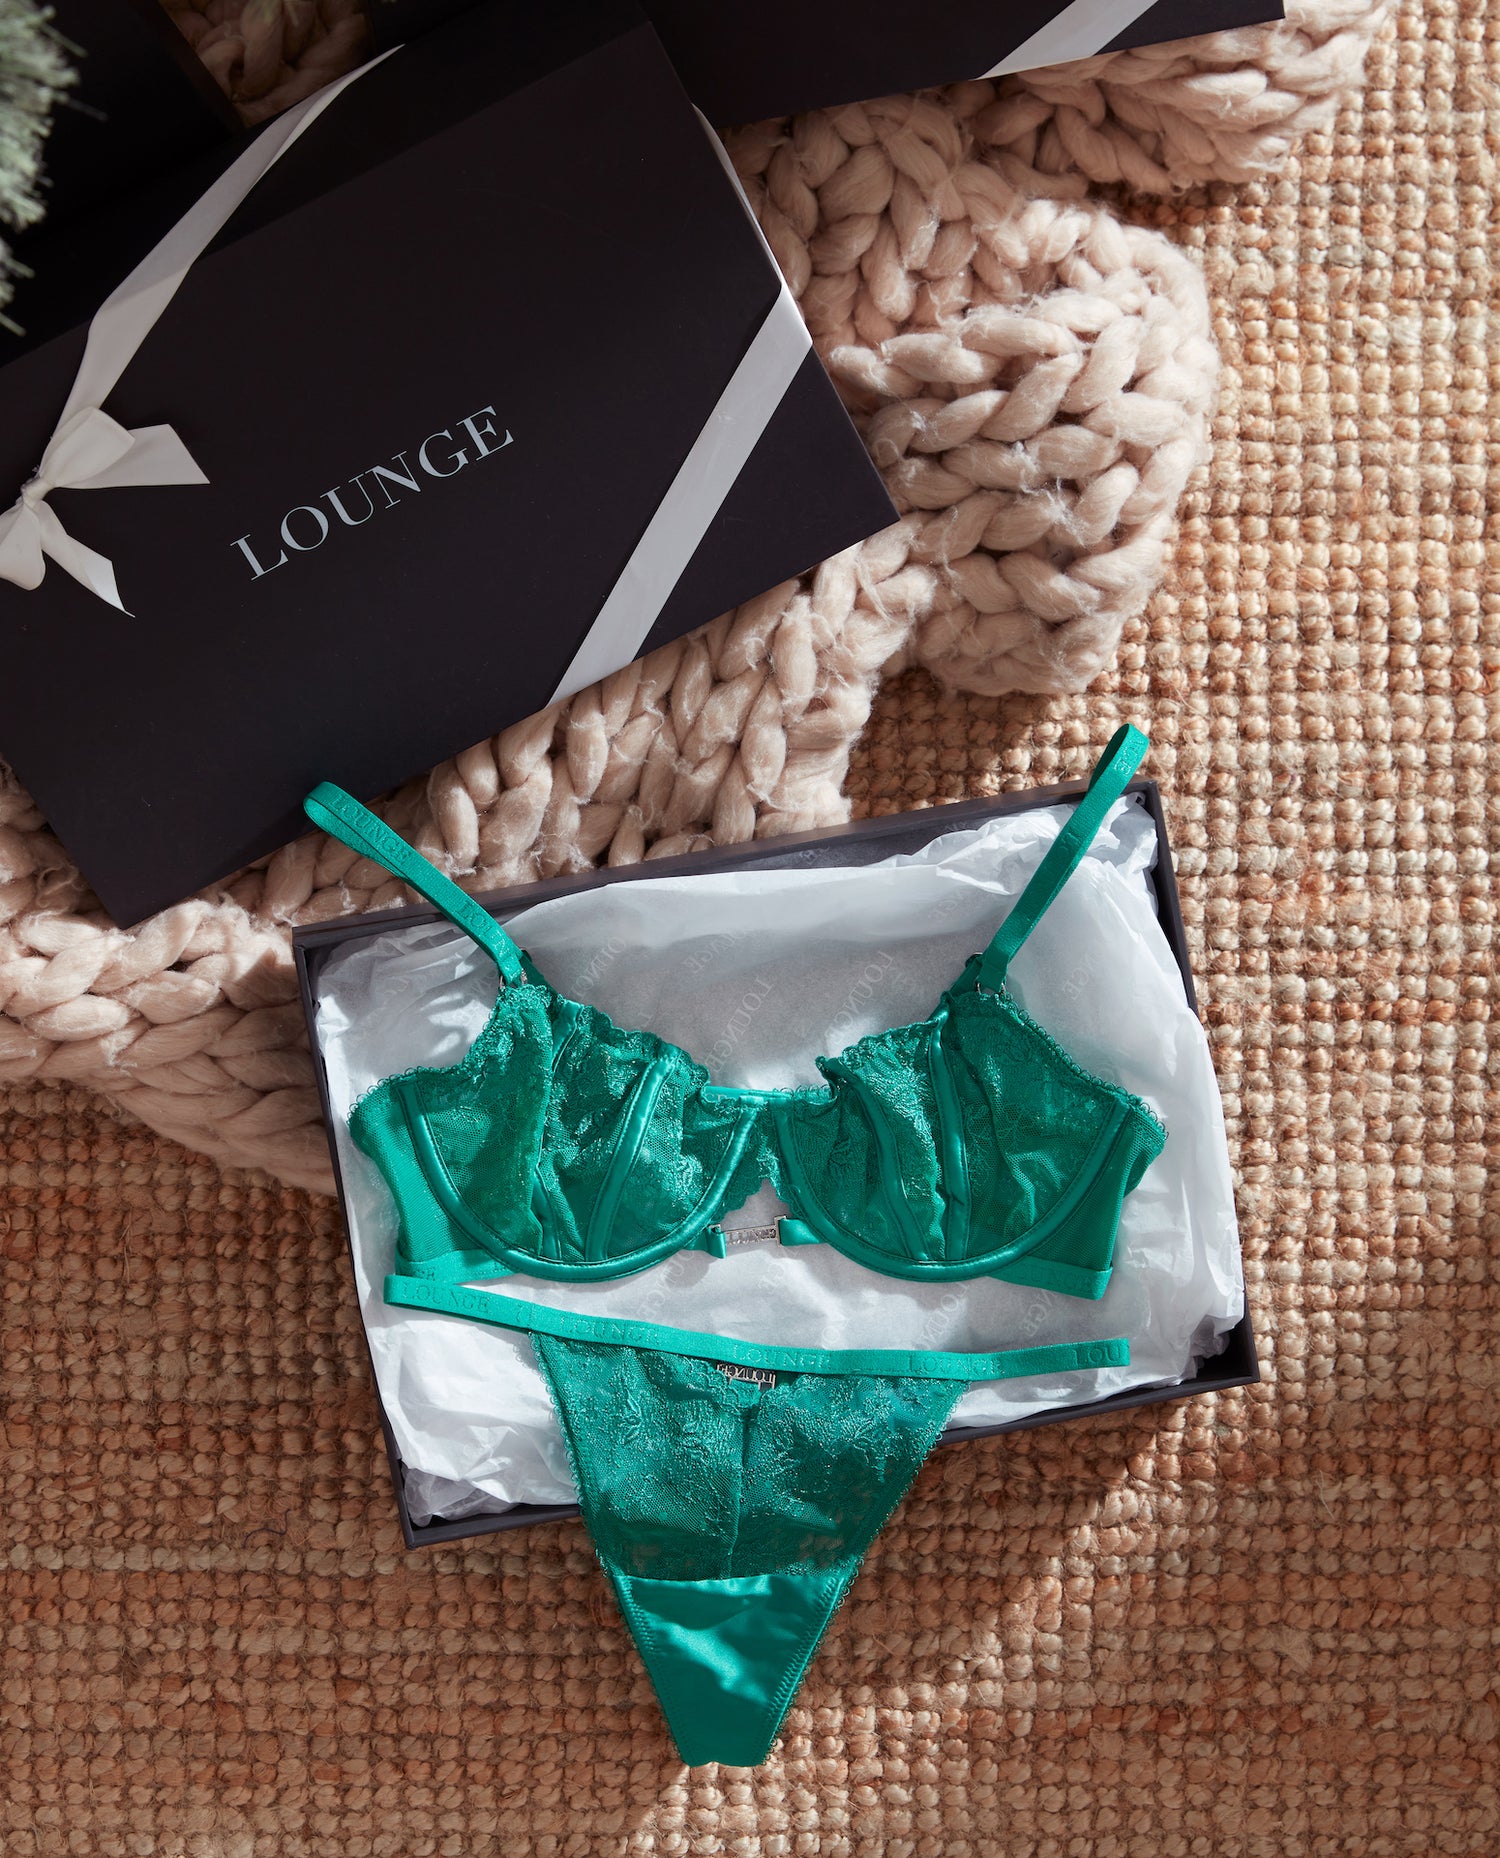 Gift Wrap – Lounge Underwear